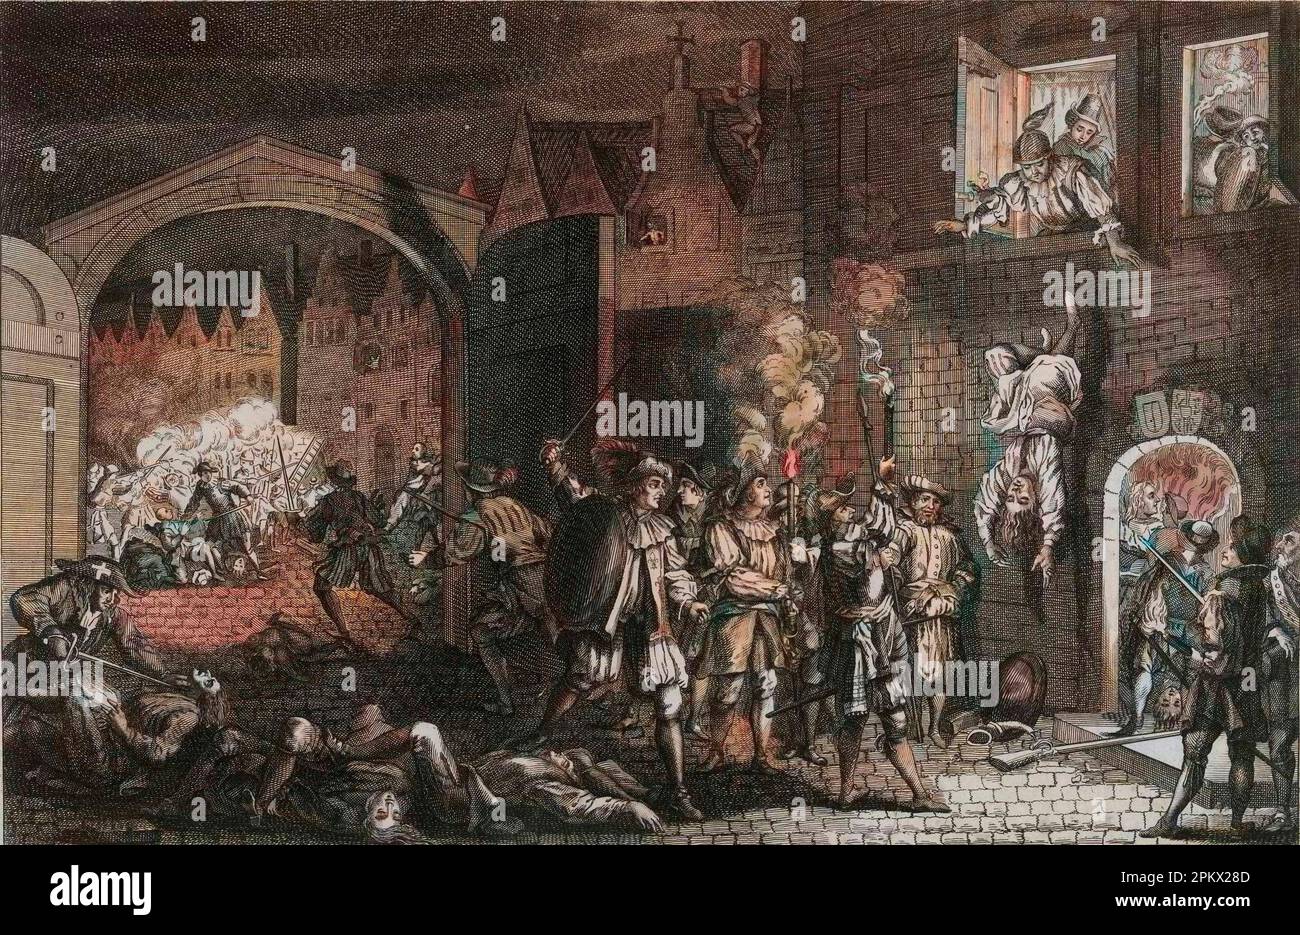 St. Massacre de Bartholomew - massacre de la saint Barthelemy - scène de la Saint Barthelemy dans les rues de Paris, en 1572. d'apres une capture du 16eme siecle Banque D'Images